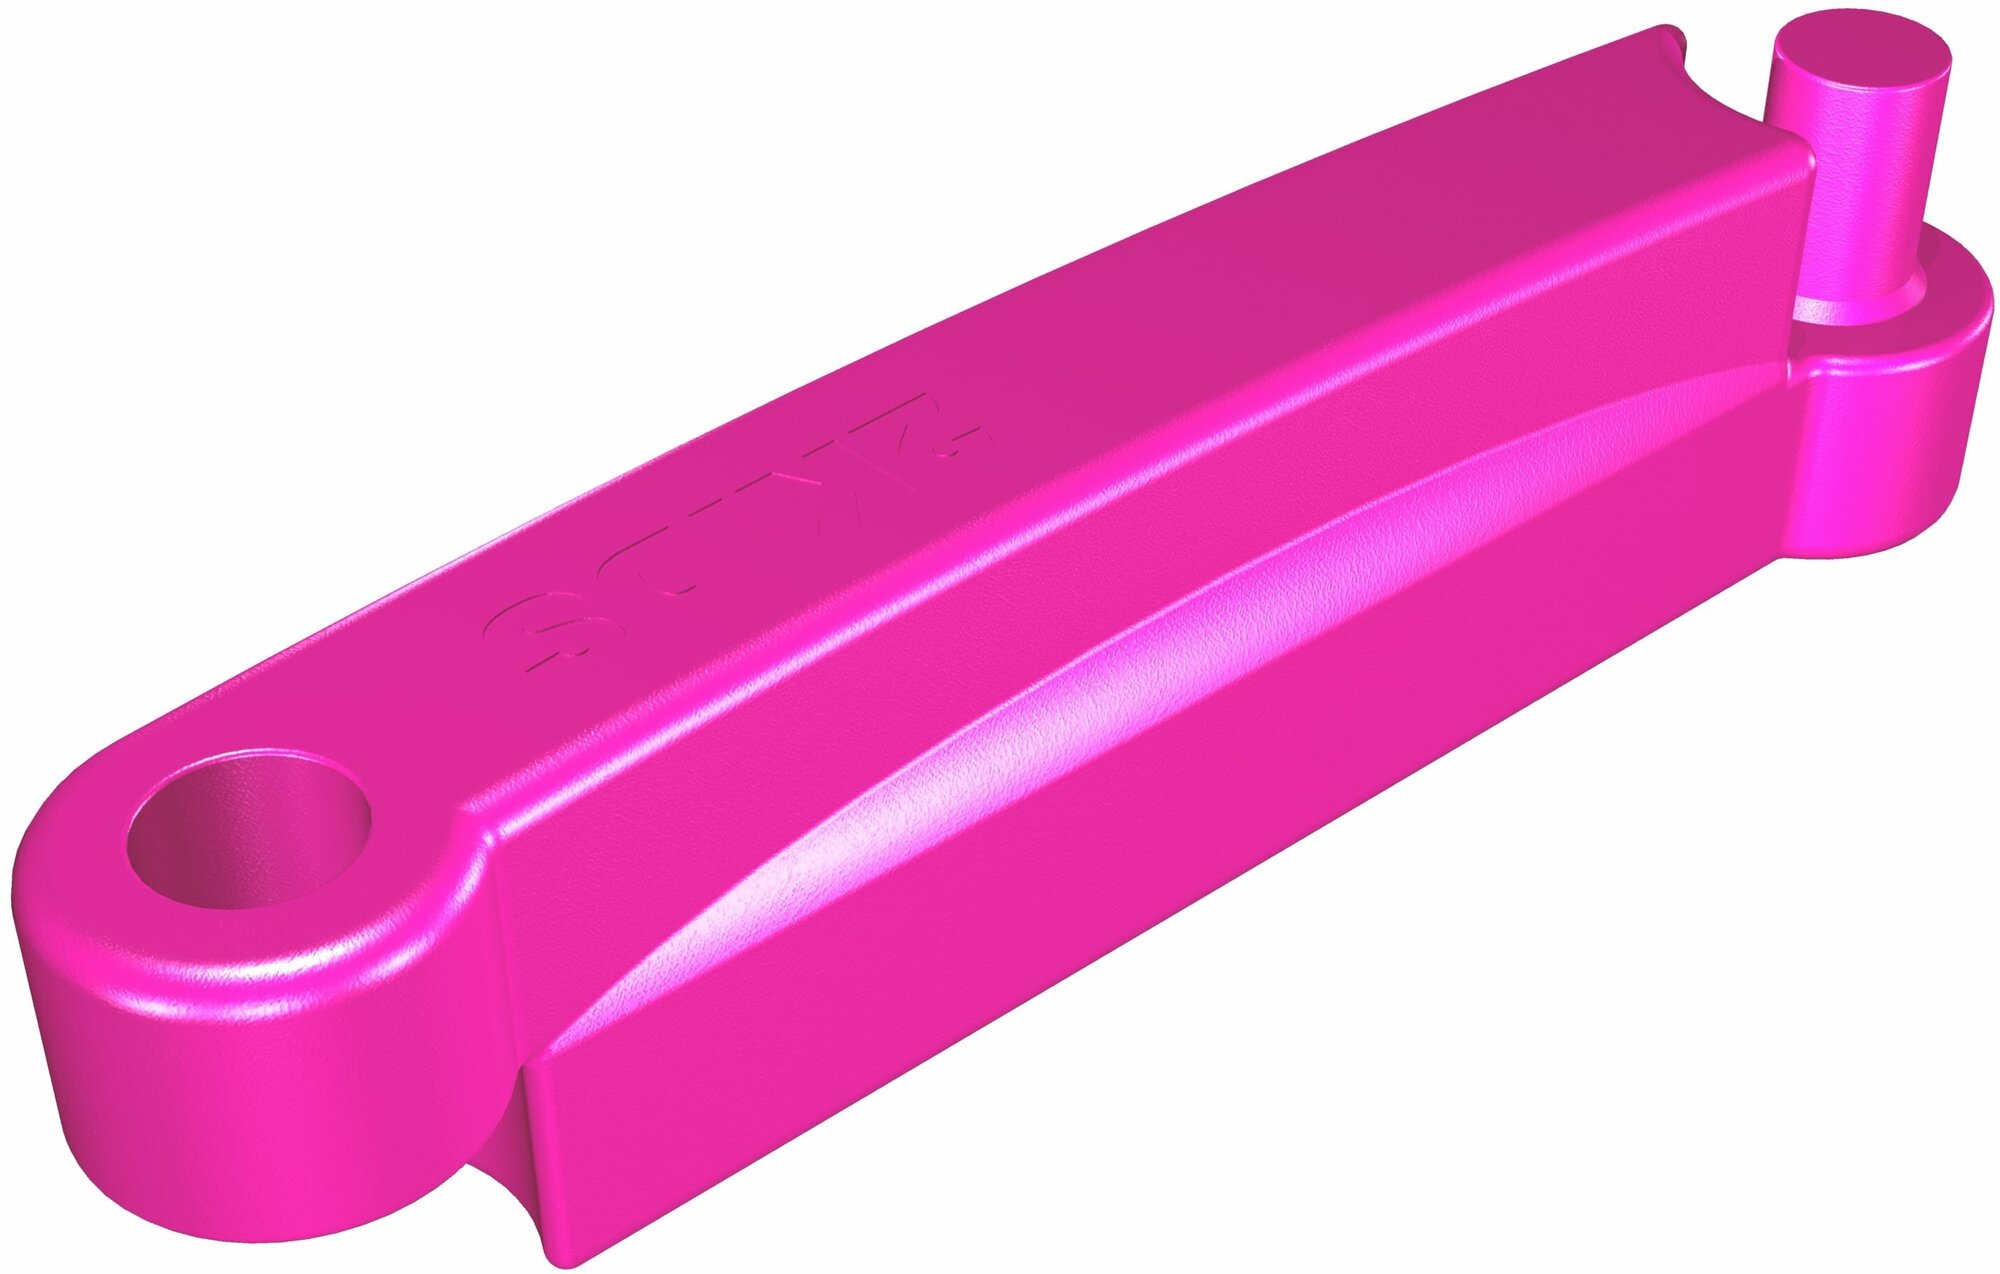 Элемент песочницы 2KIDS цвет фиолетовый